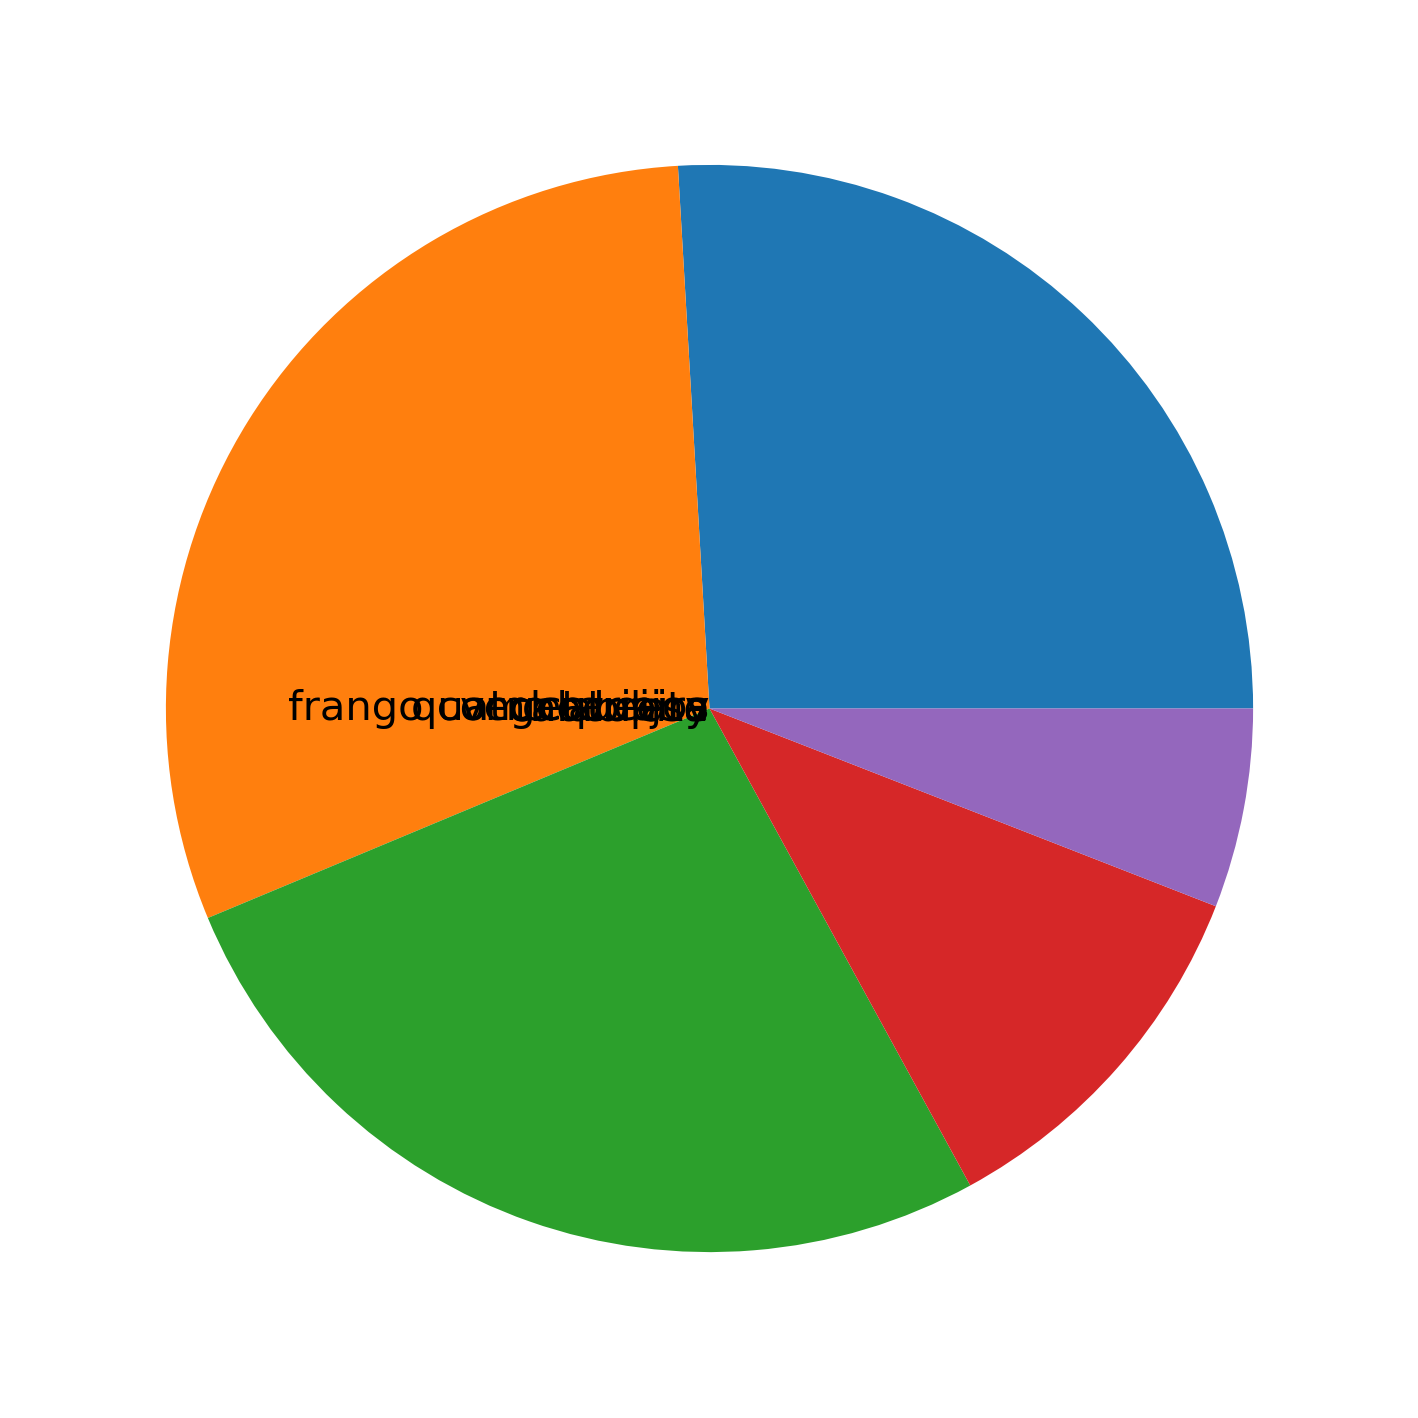 gráfico de pizza desenhado com matplotlib com labels nas fatias.